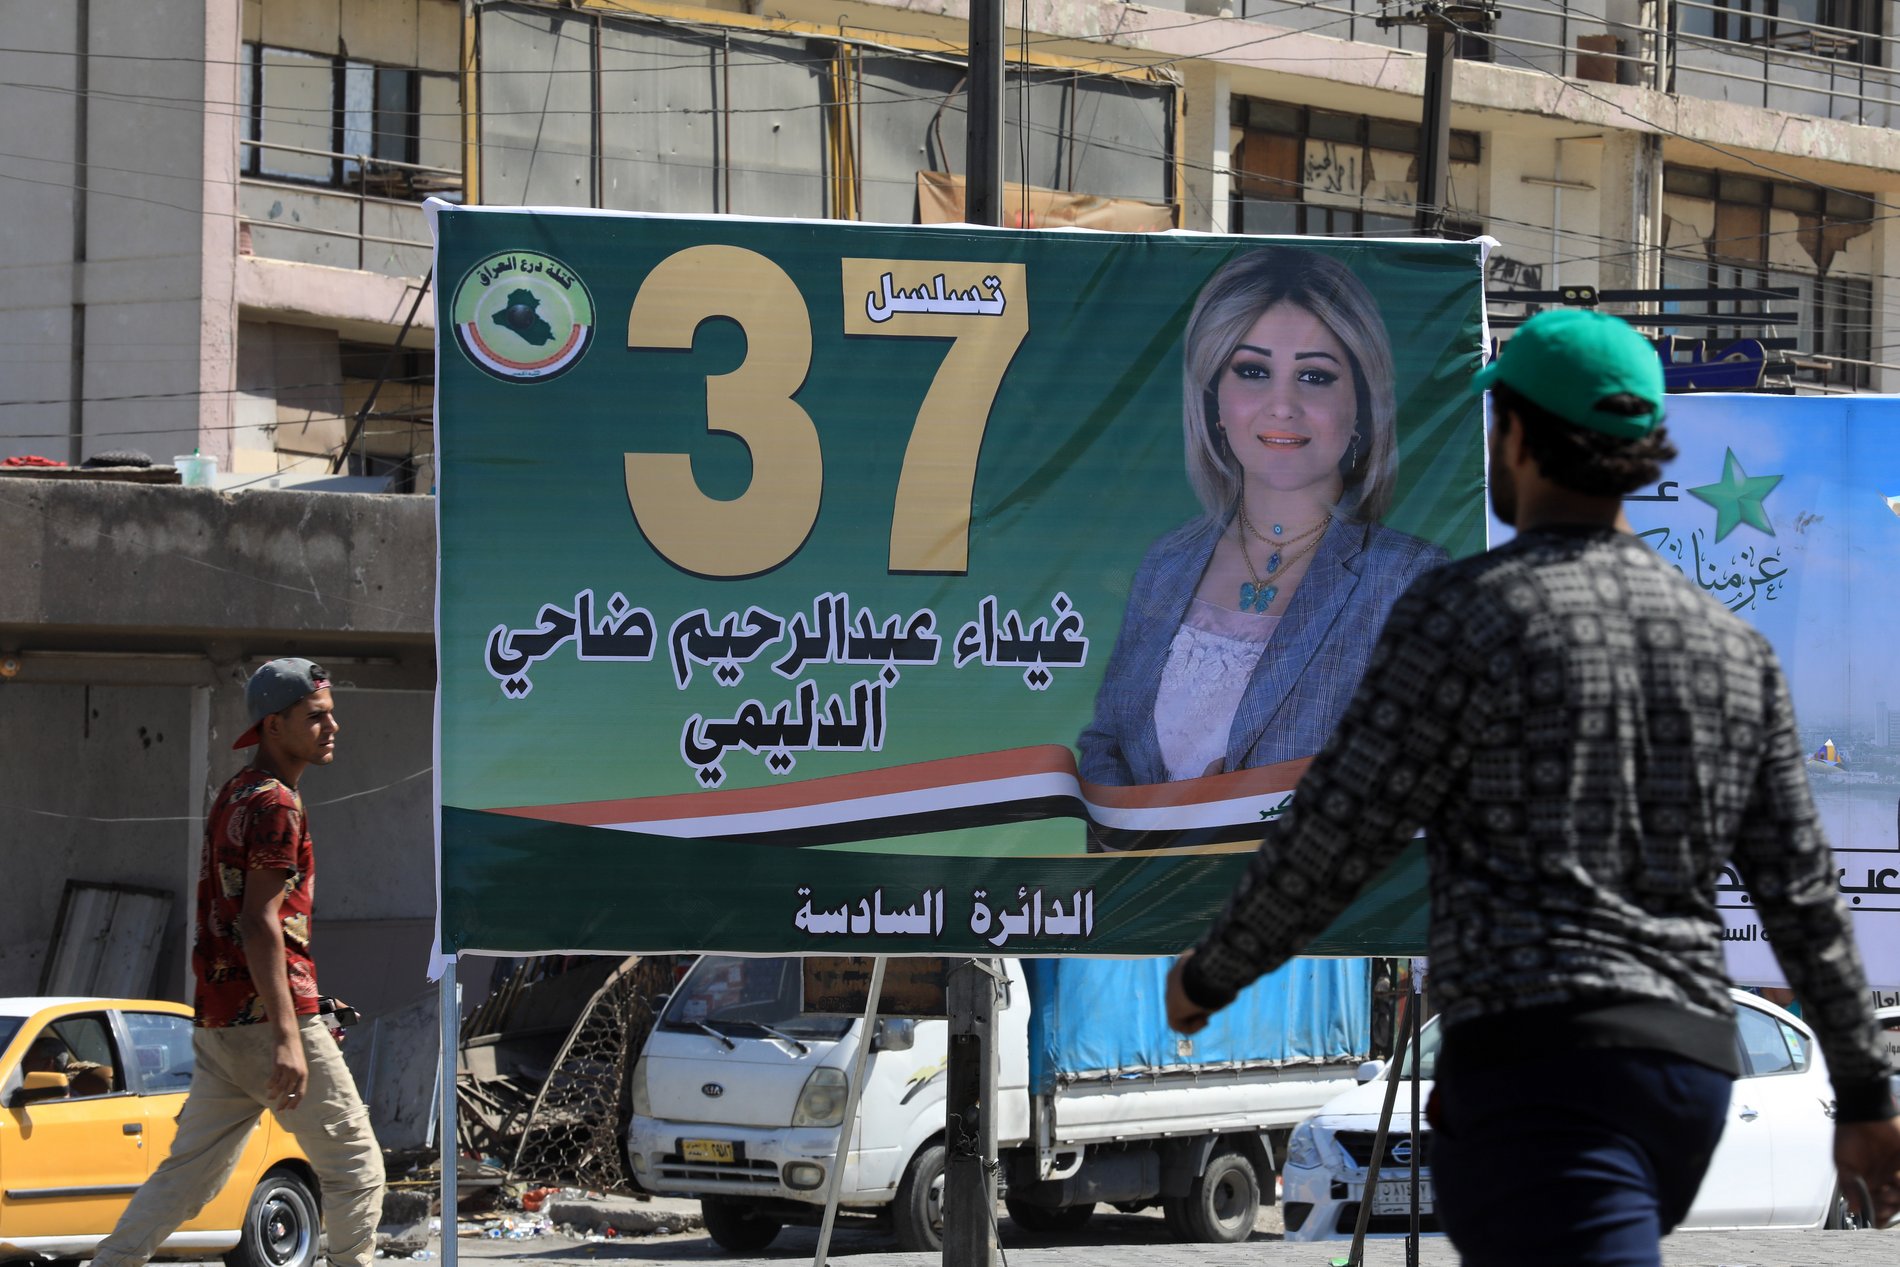 Plakat einer weiblichen Kandidatin für die Wahlen in Bagdad, Irak.